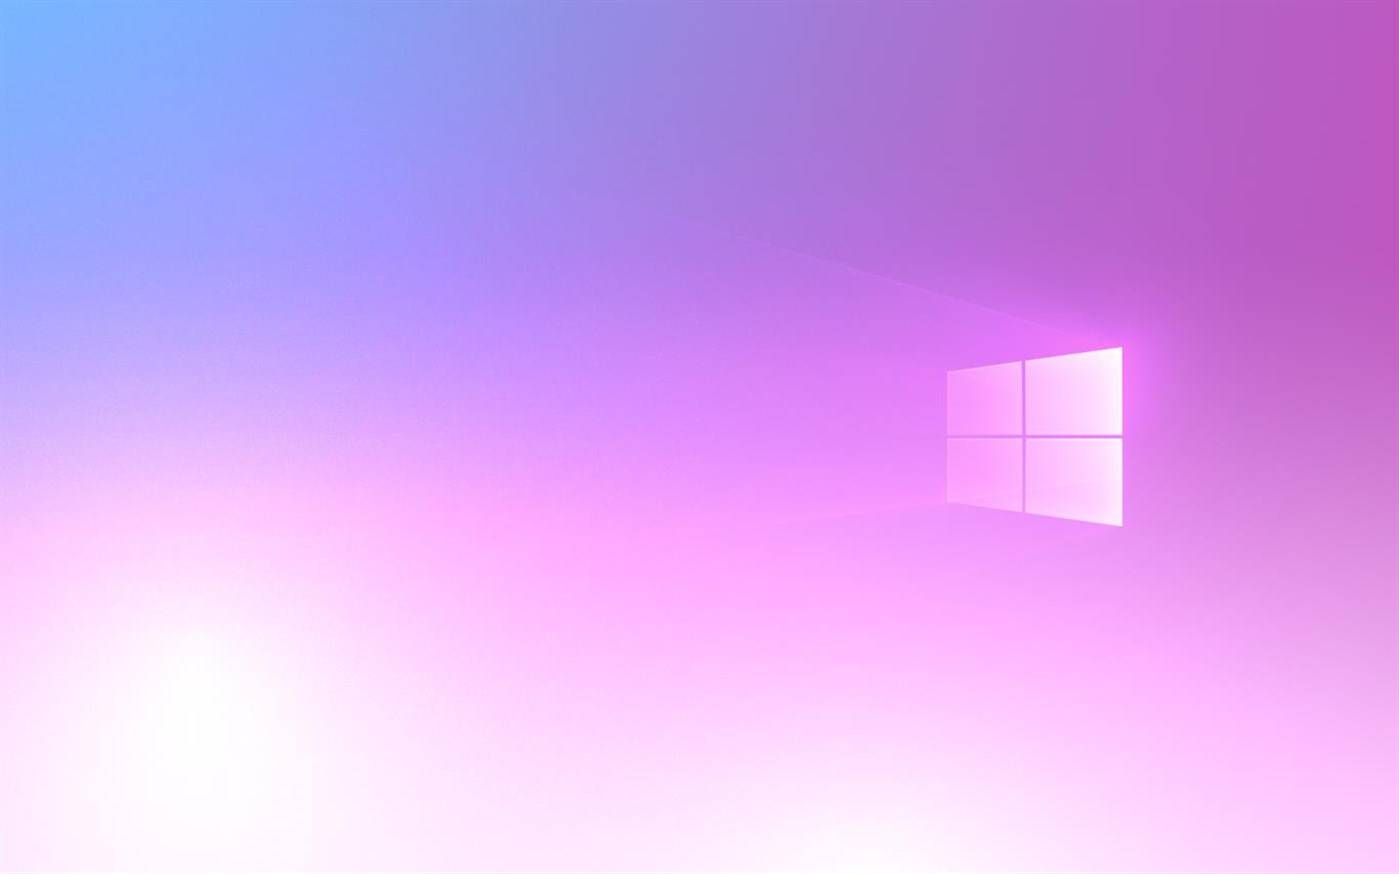 微软发布免费windows 10主题庆祝 骄傲月 活动 Pride